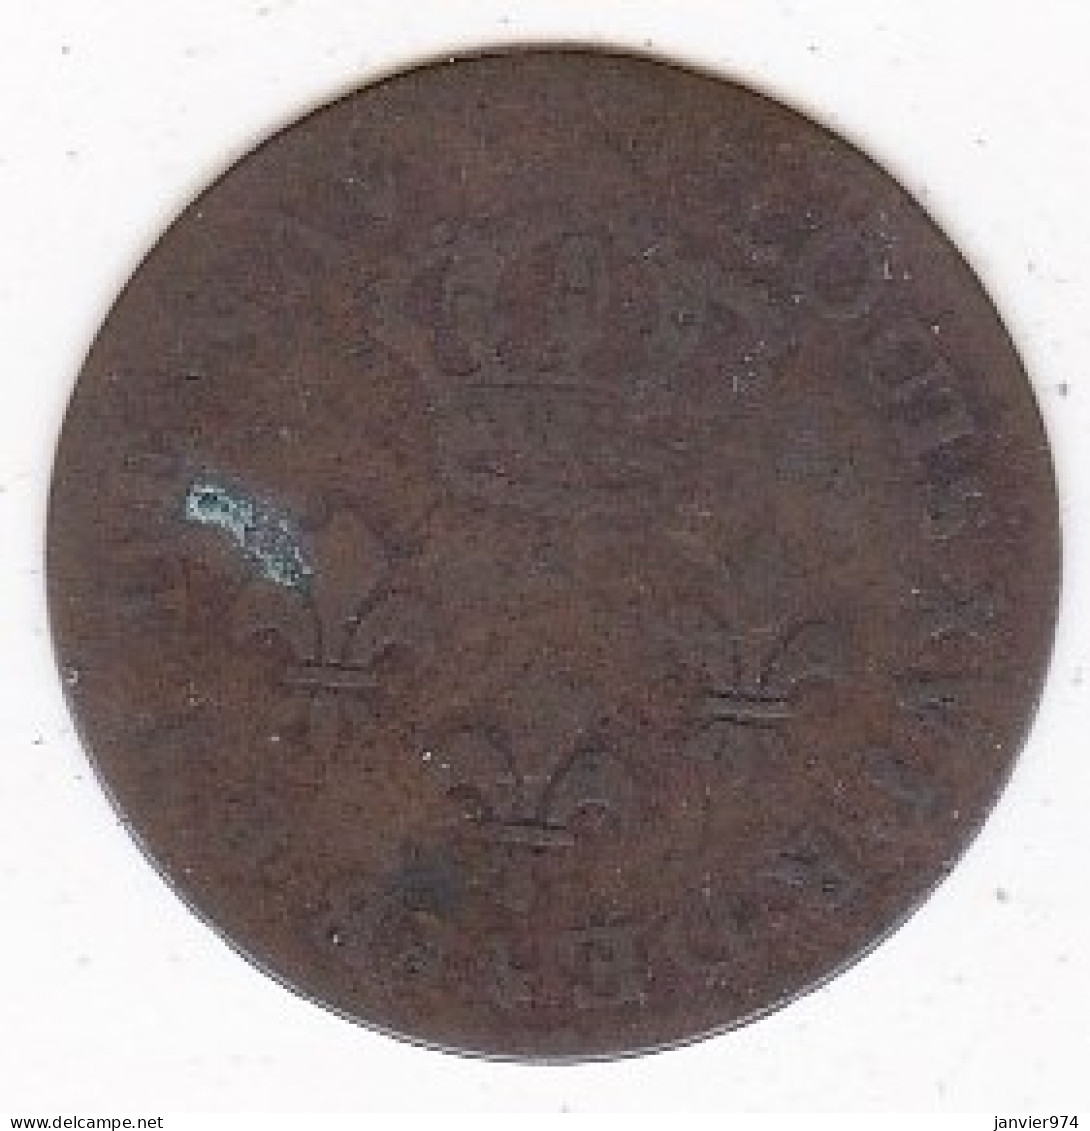 Guyane. Colonie De Cayenne. 2 Sous 1789 A Type 2, Frappe Monnaie . Louis XVI, Lec. 20 - French Guiana